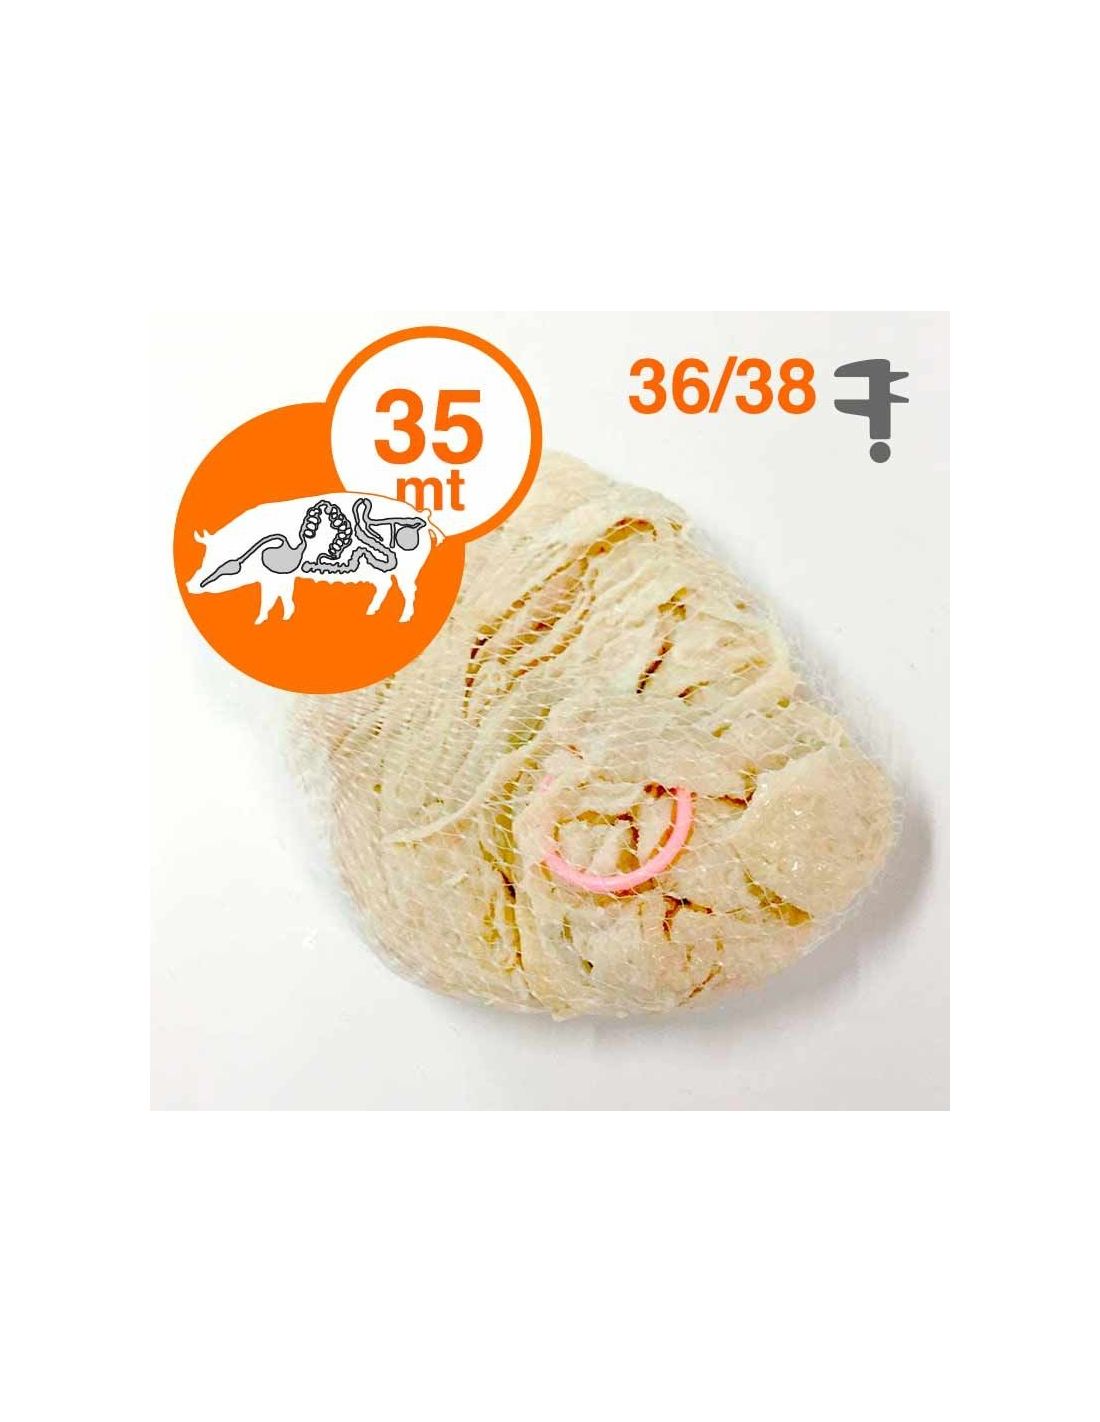 budello naturale di maiale calibro 36/38 per salsicce